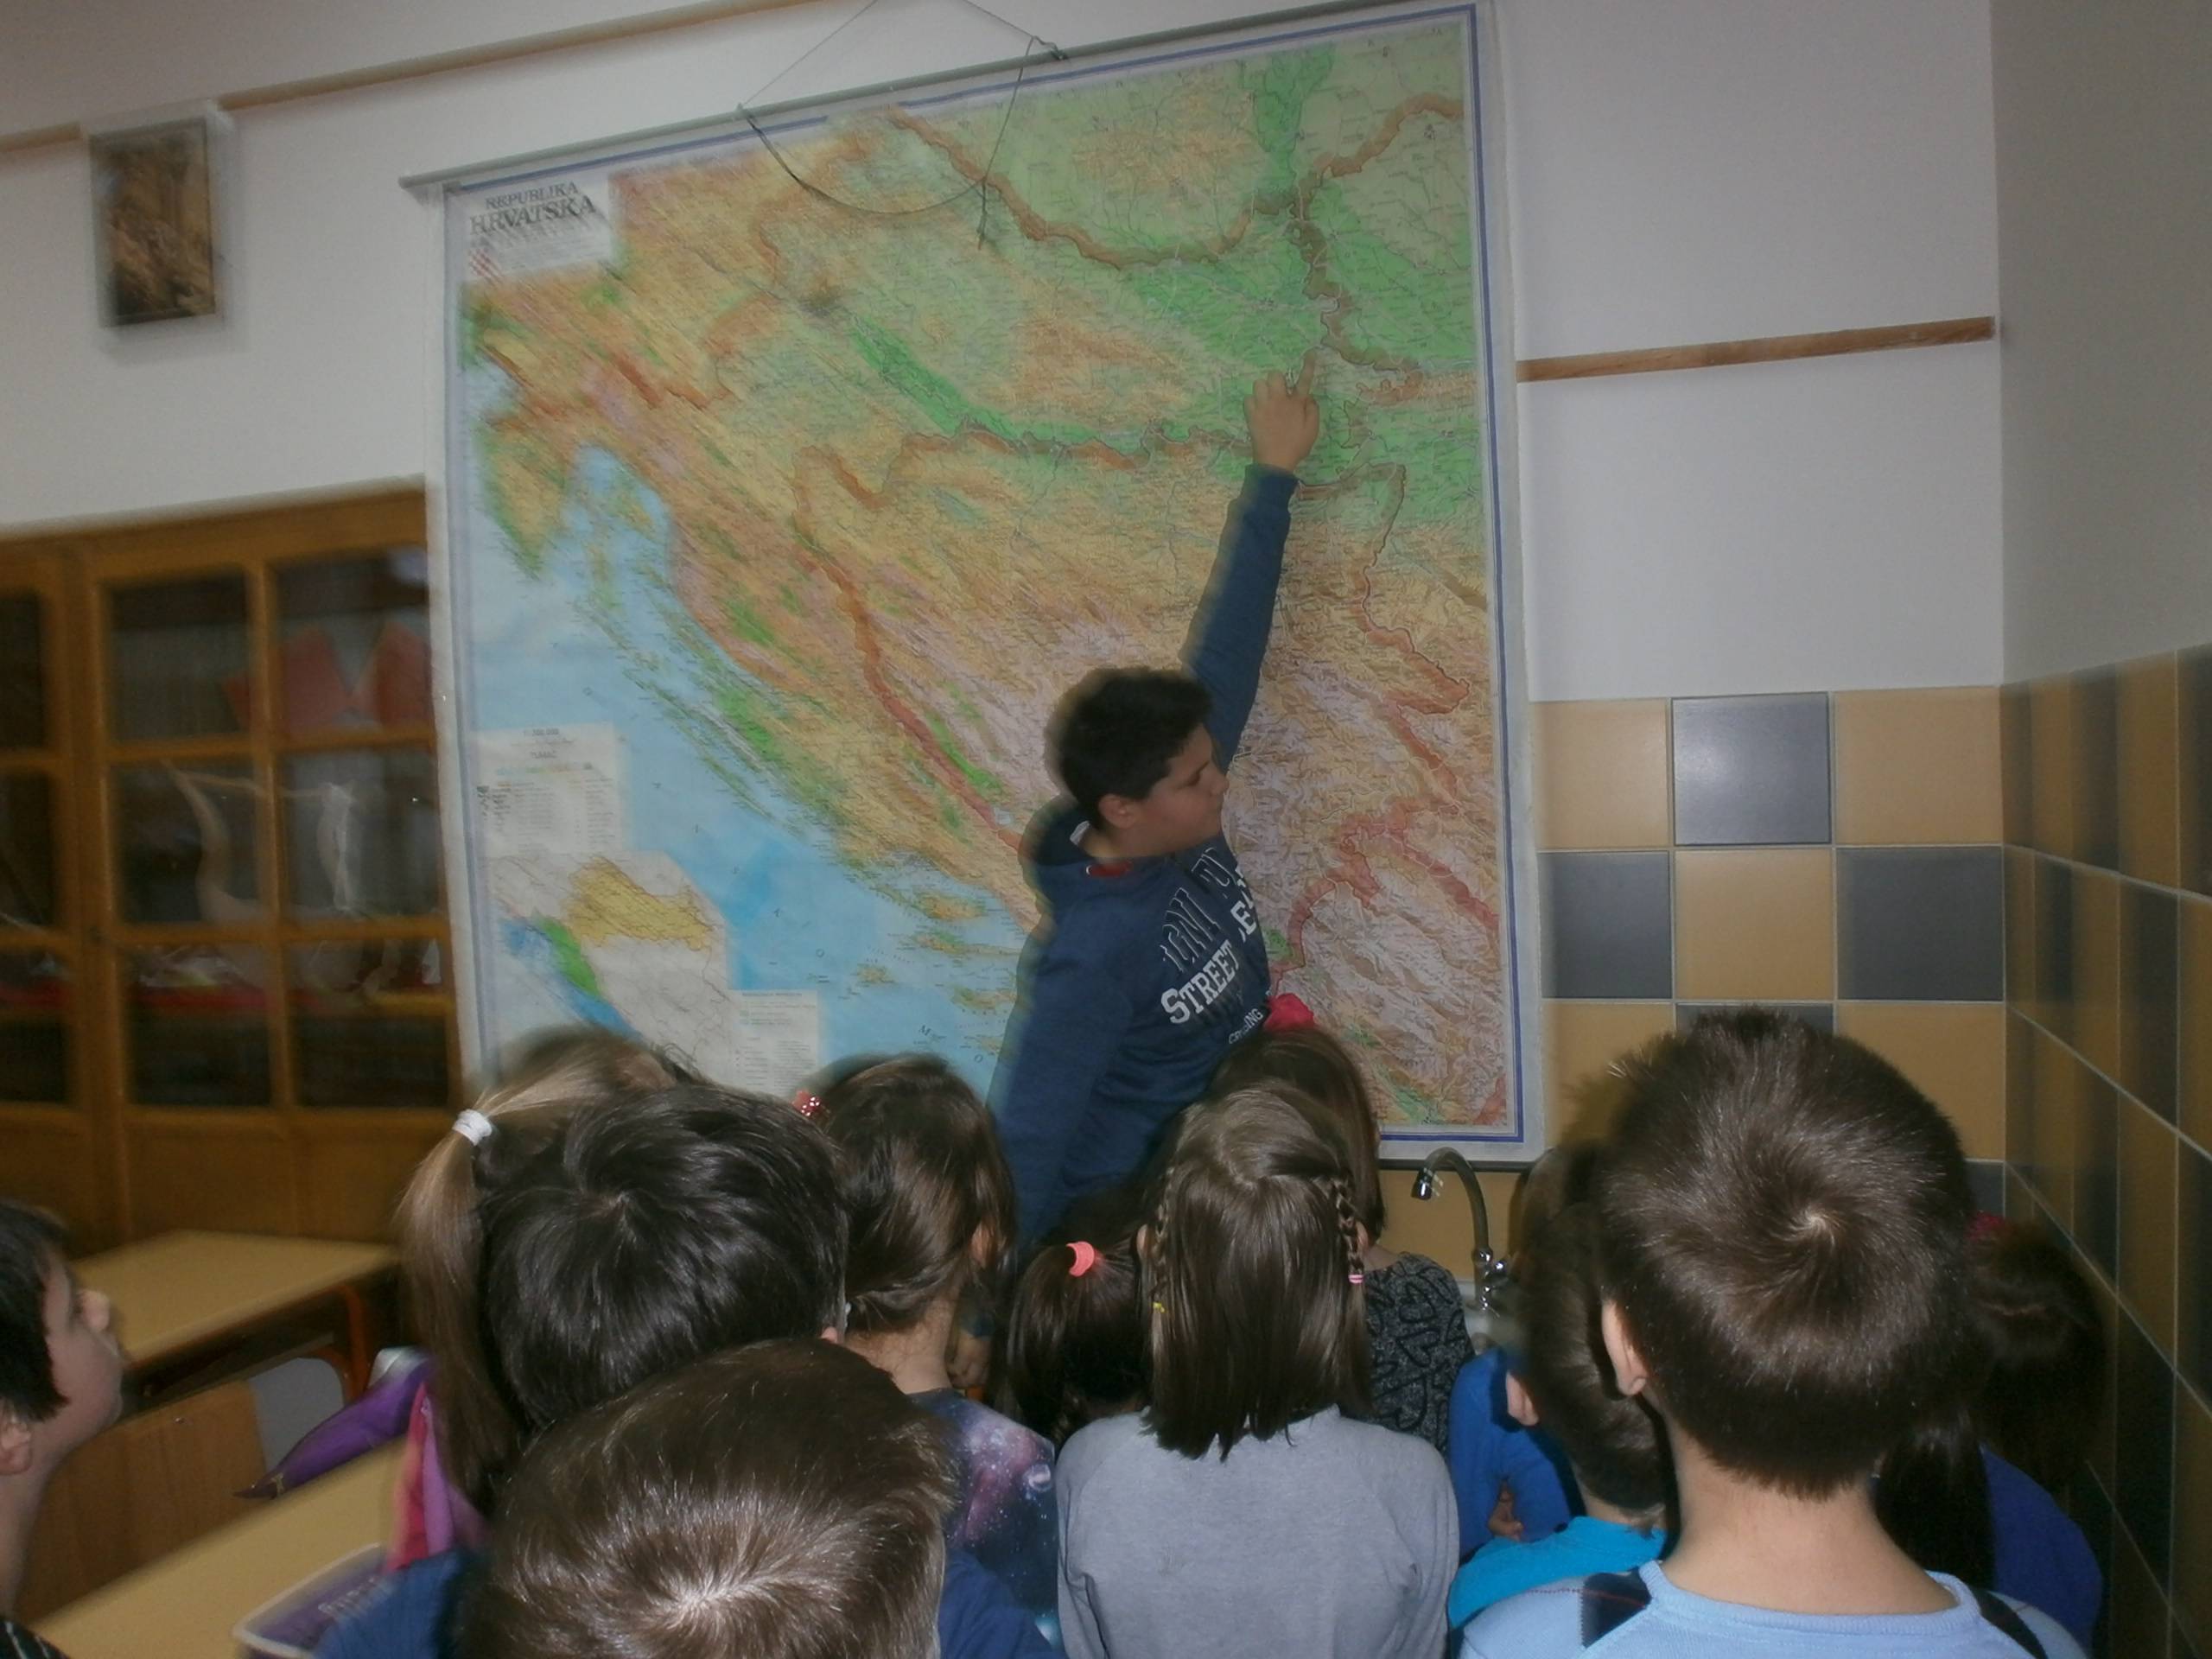 Karlo Mijatovi na karti Hrvatske pokazuje rijeku Dunav